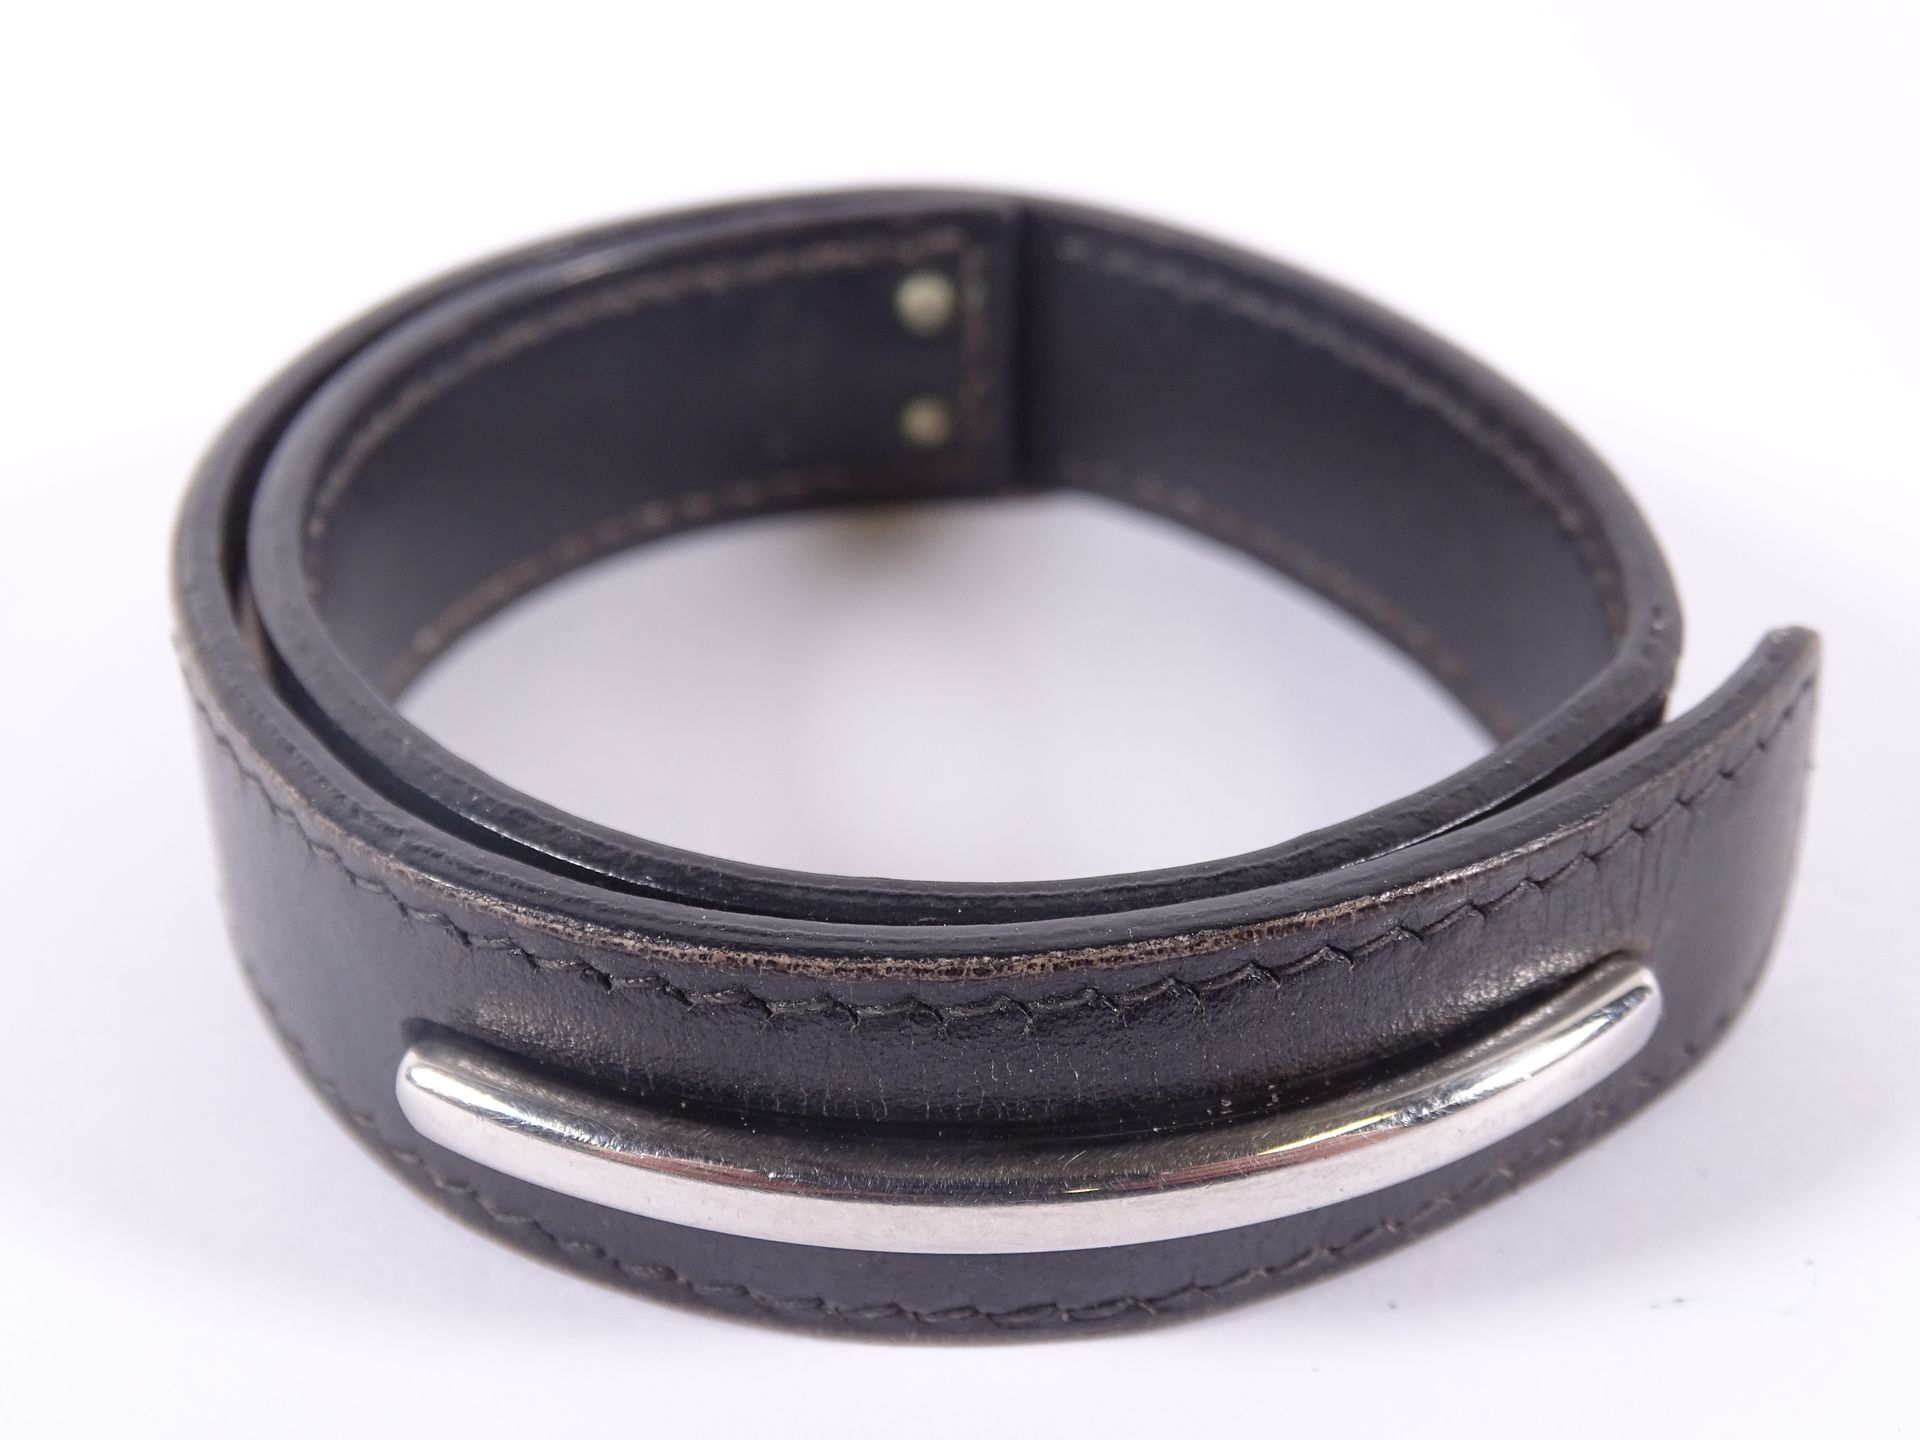 HERMES Bracelet en cuir noir double tour à décor d'une barrette.

Diamètre : 6,5&hellip;